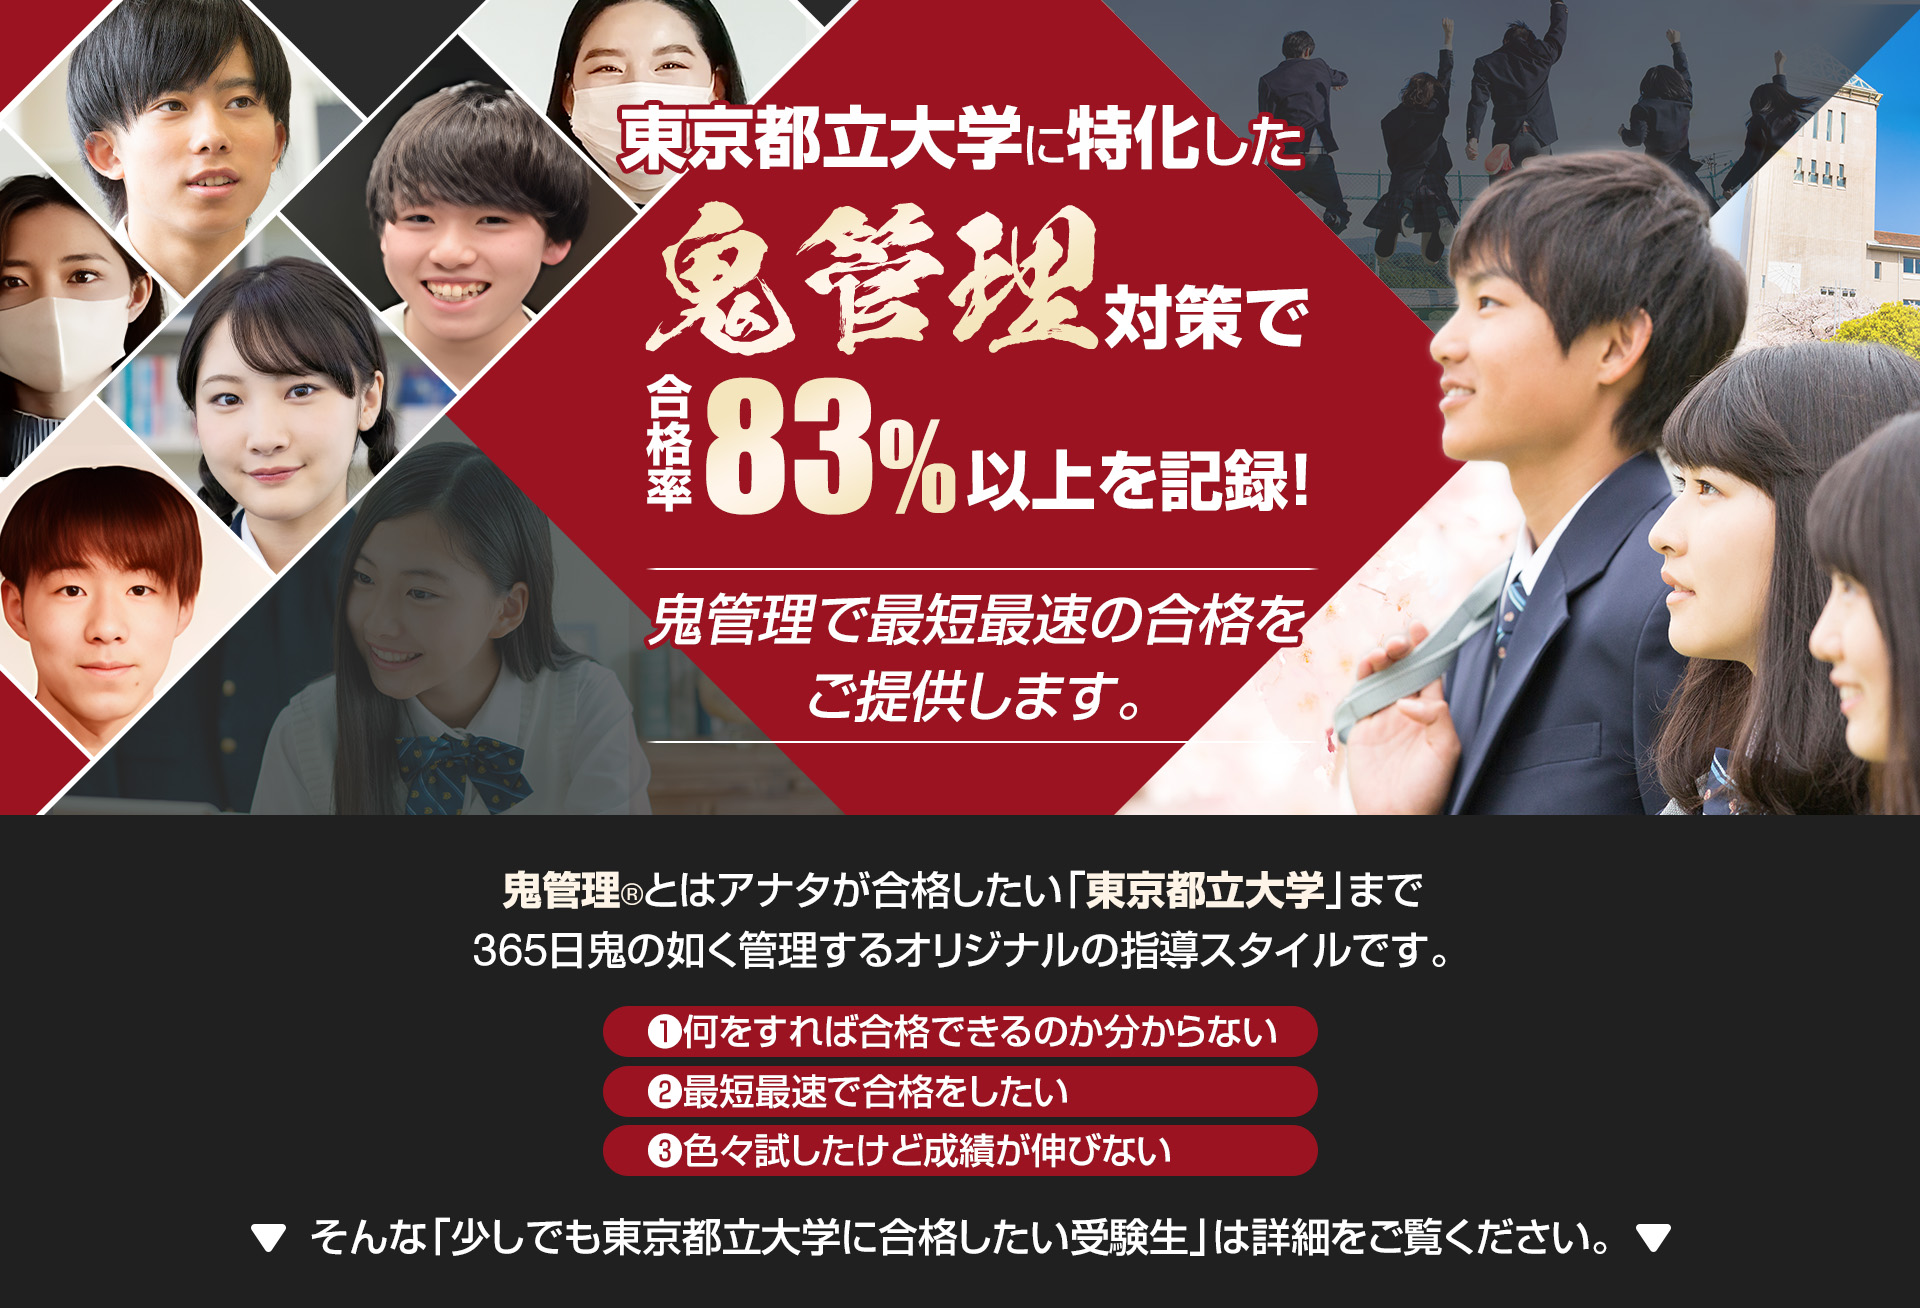 東京都立大学に特化した鬼管理対策で合格率83％以上を記録。鬼管理でアナタが合格したい東京都立大学への最短最速の合格を提供します。